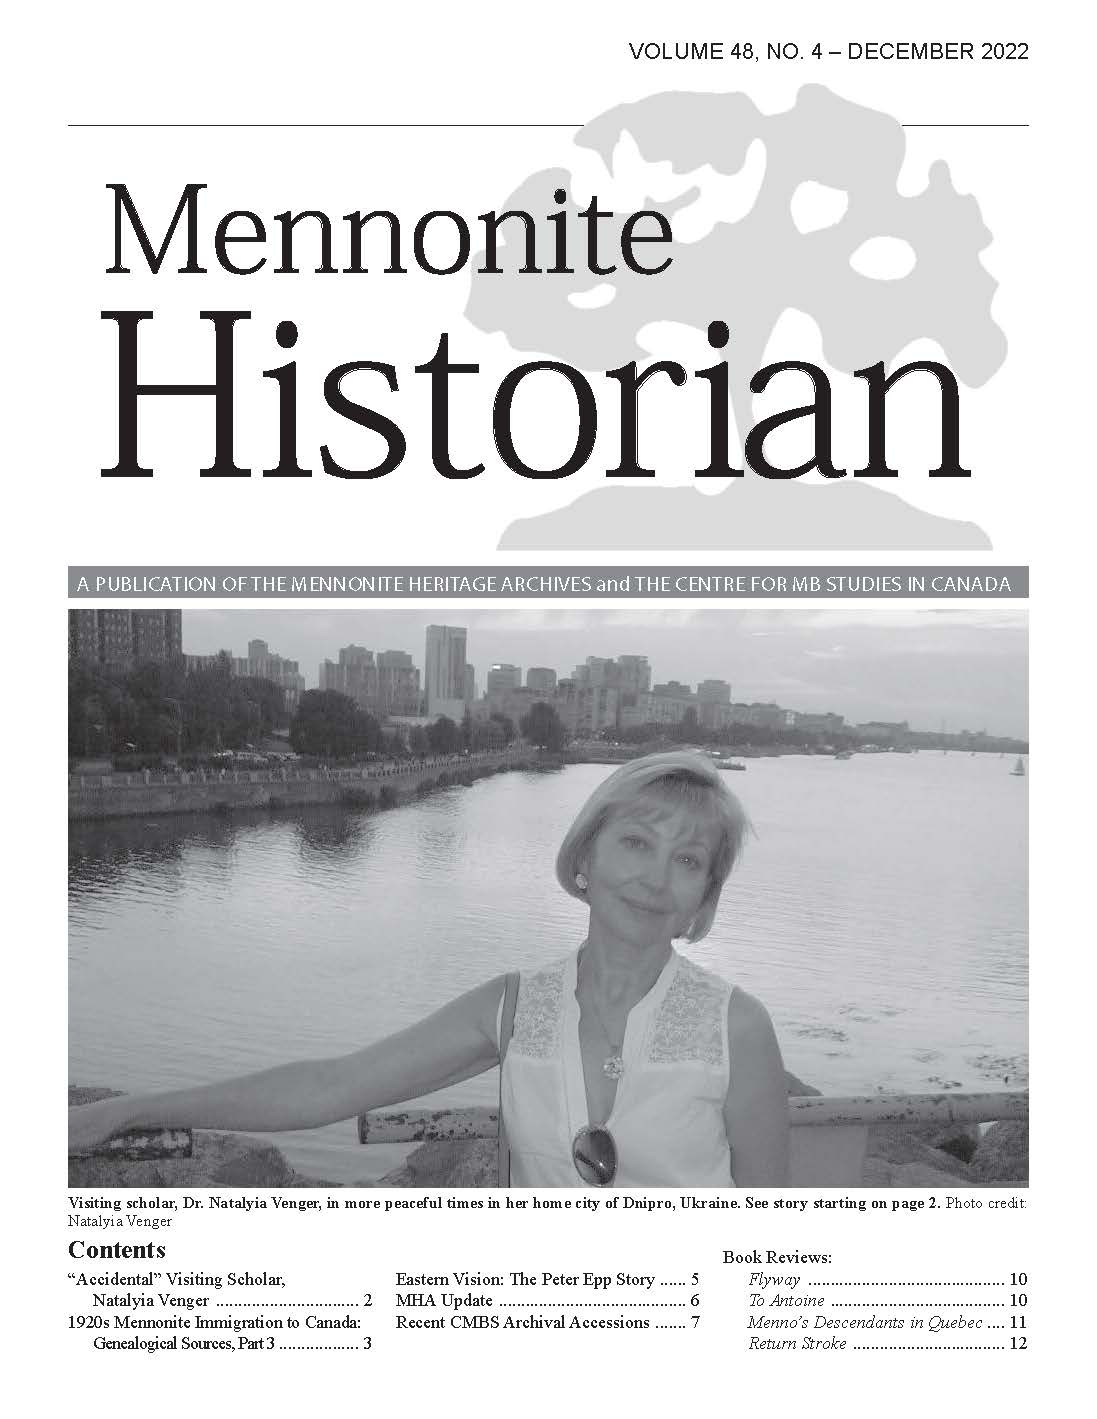 Mennonite Historian (December 2022)